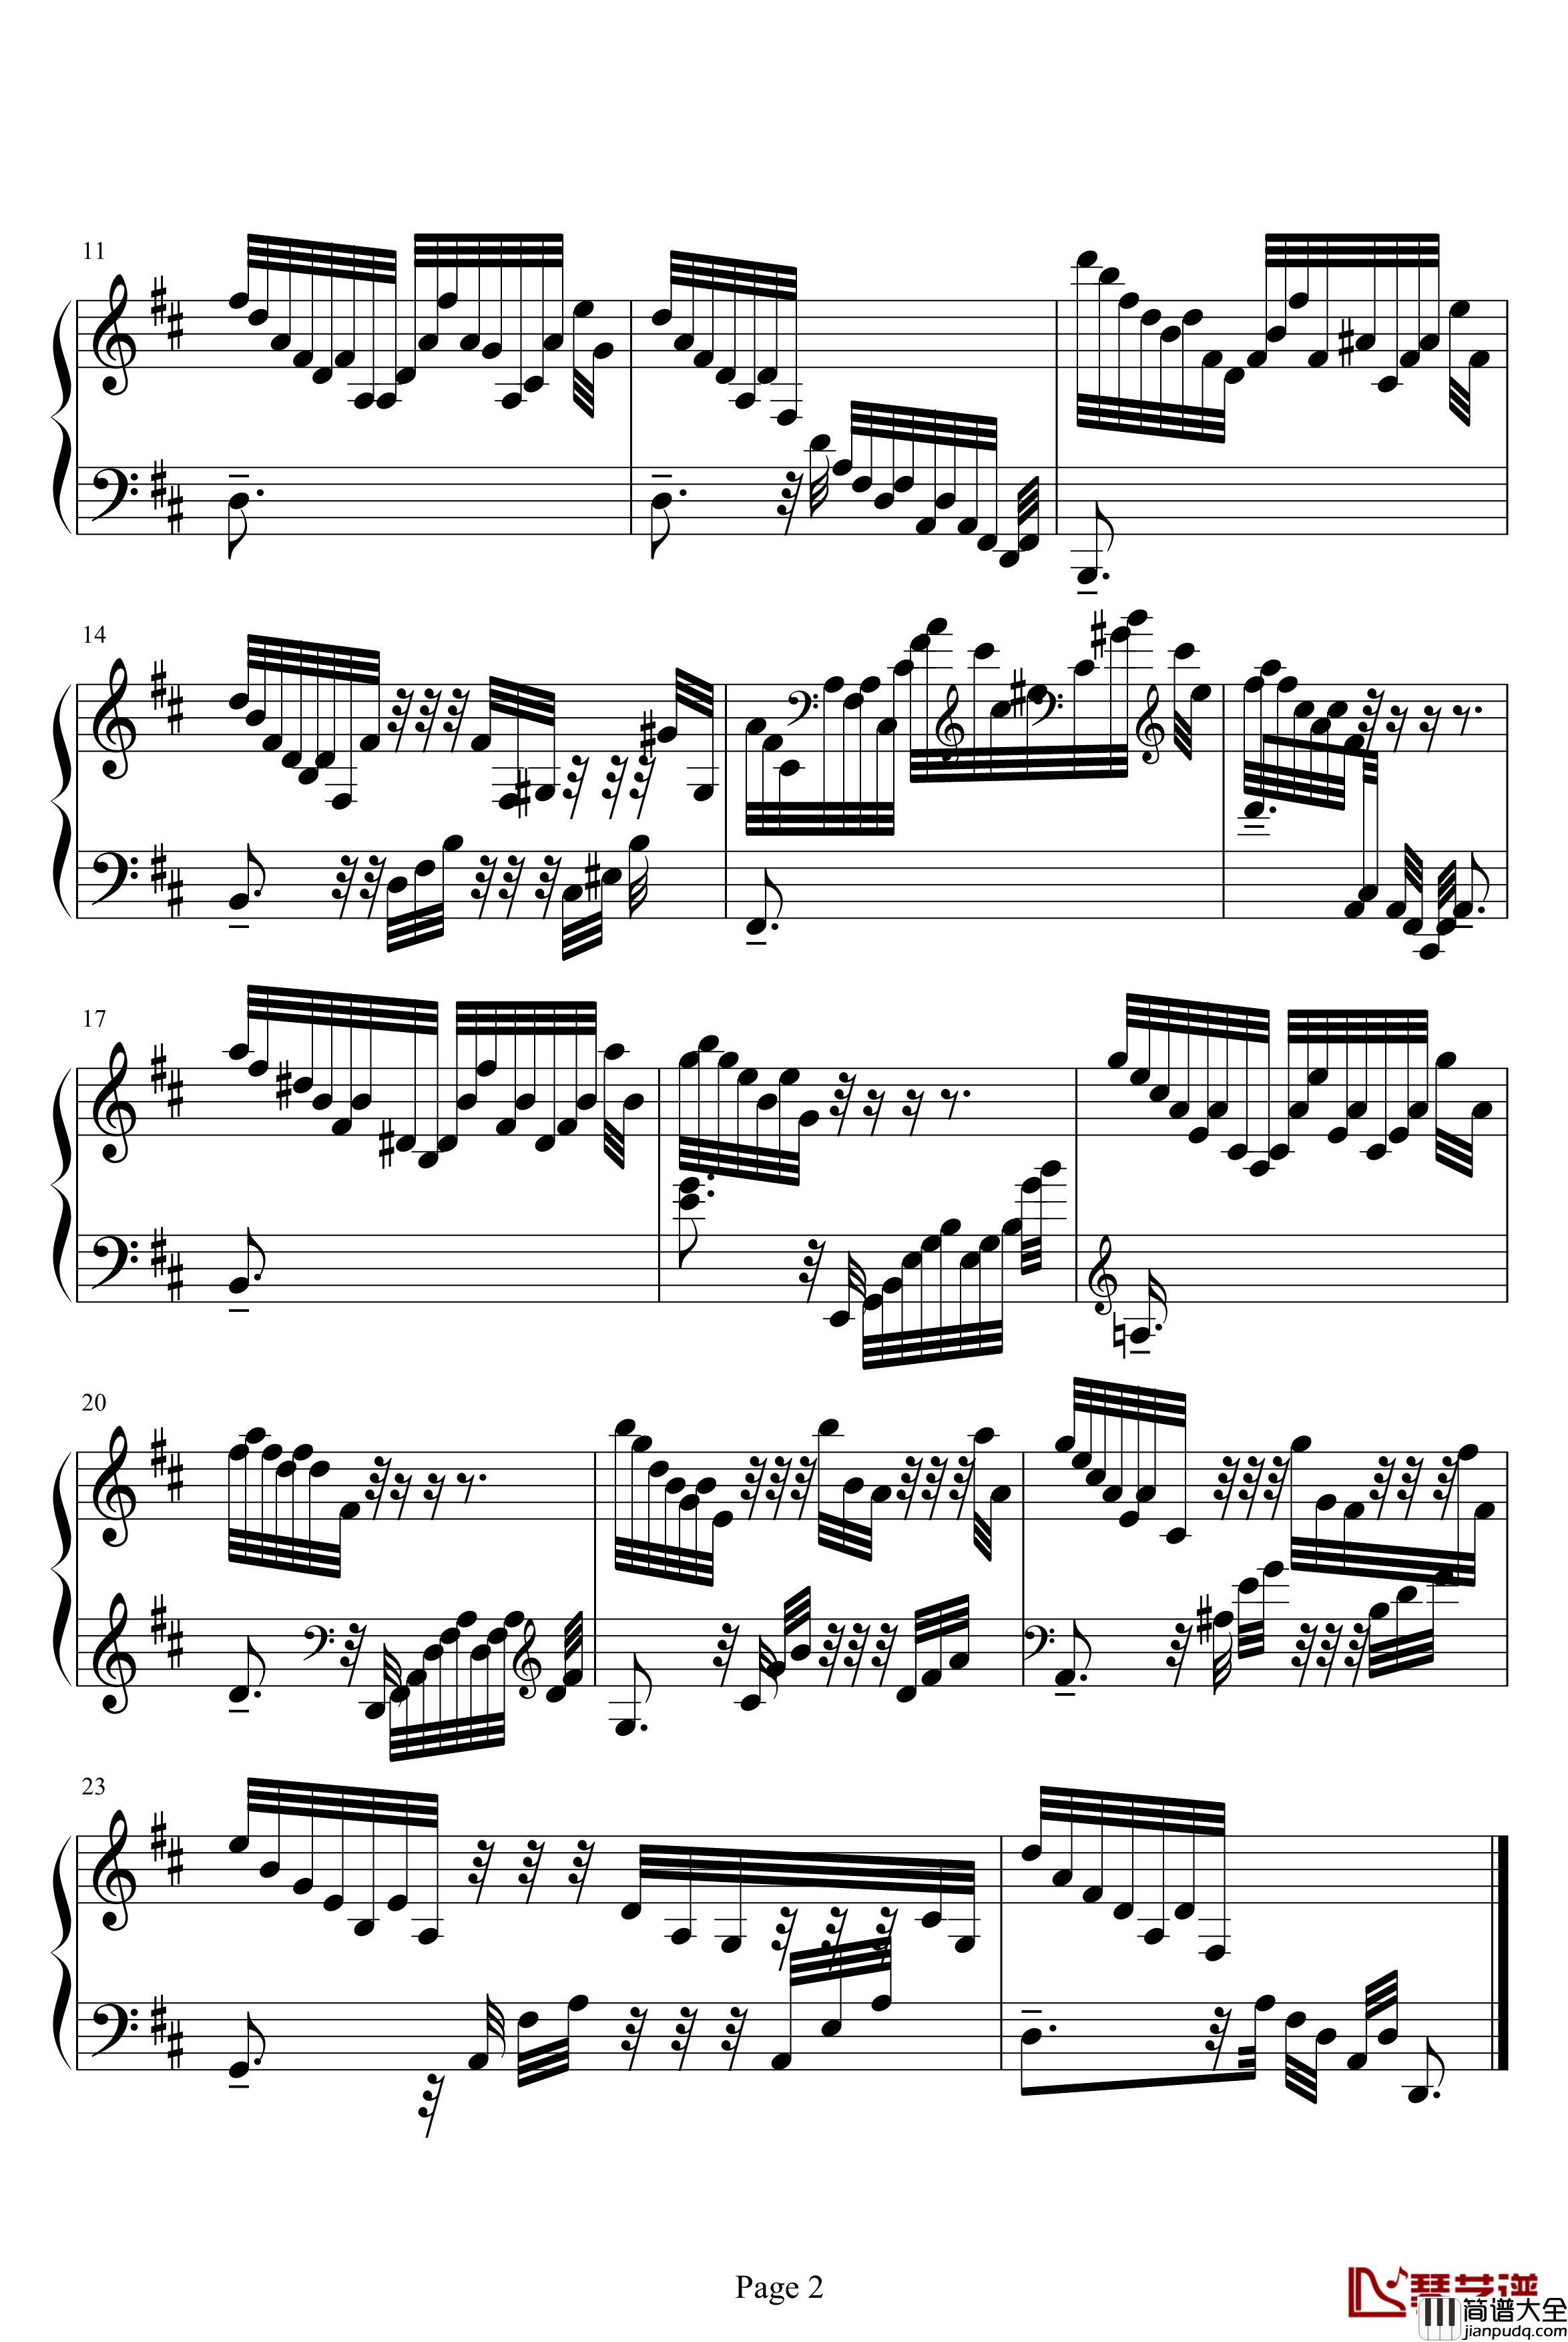 克拉莫练习曲钢琴谱_jonesoil上传版_克拉莫